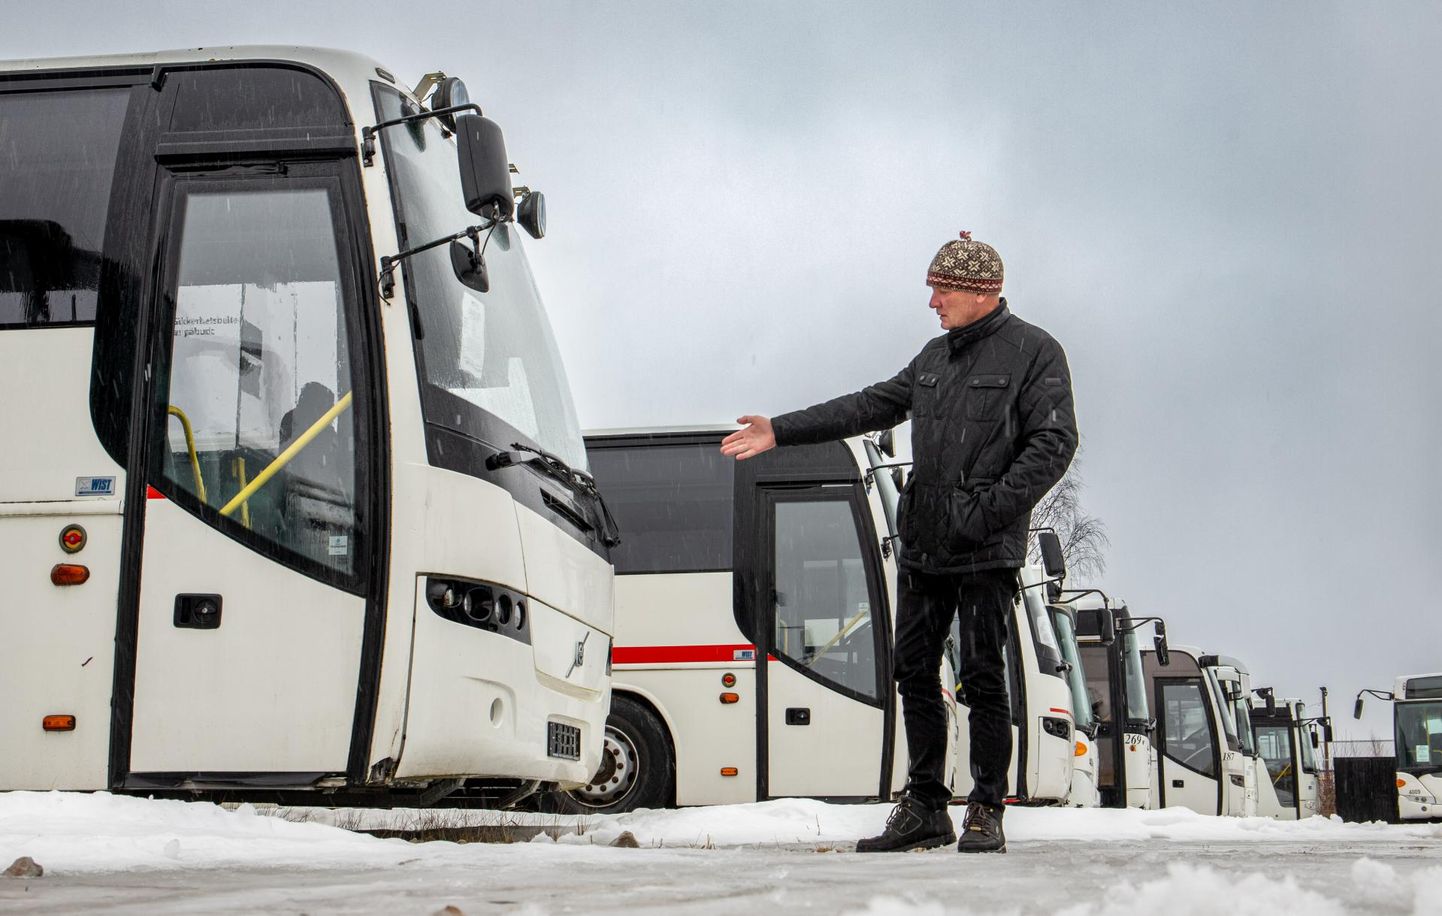 Saugas tegutsev ettevõtja Raimond Pärn kutsub üles annetama, et saata Ukraina armeele 15 bussi.